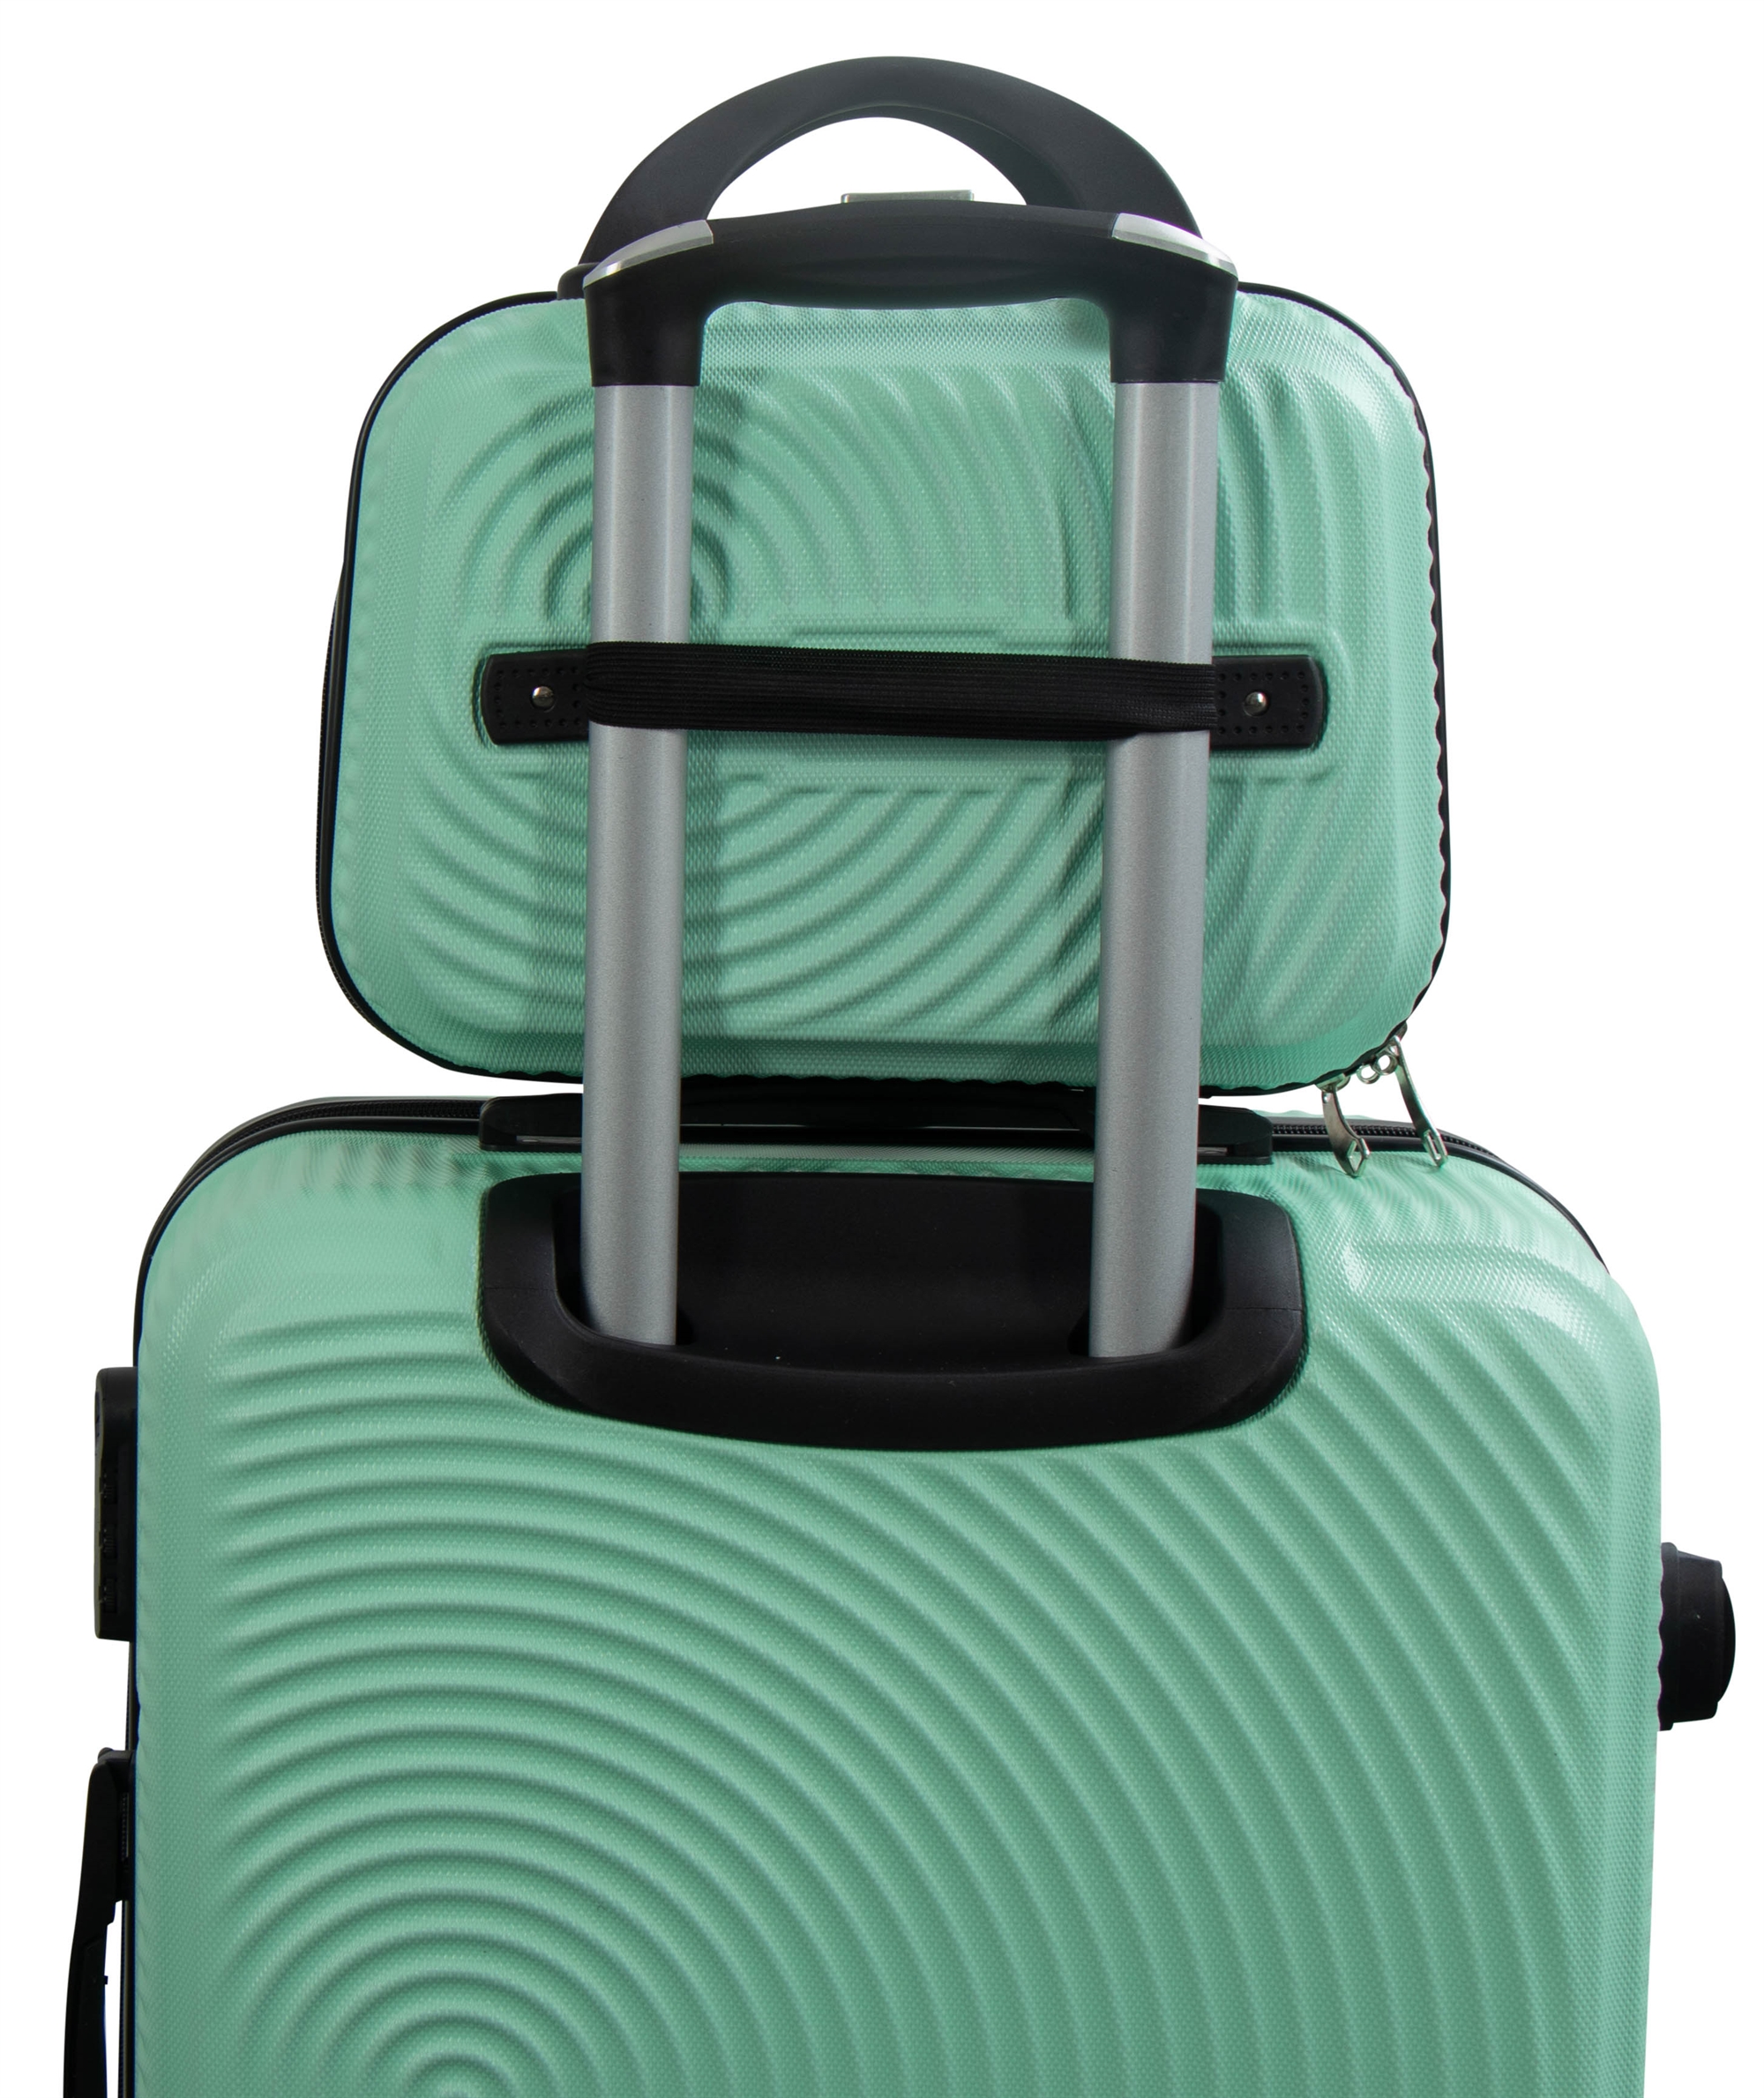 Kabine • Lille håndbagage taske • Pastel grøn